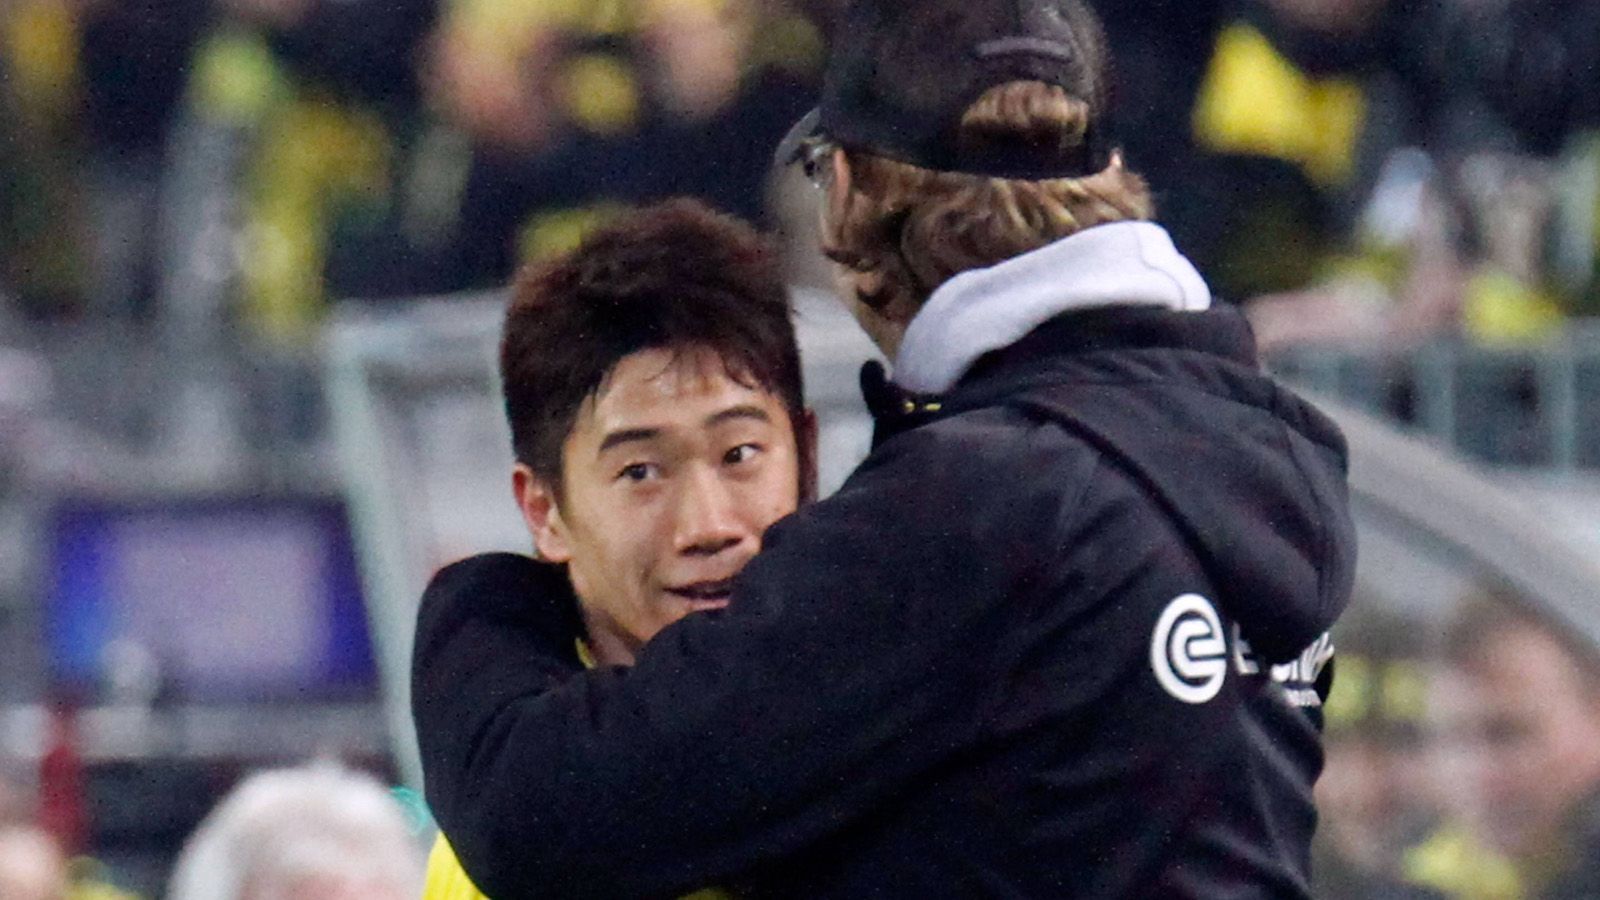 
                <strong>Shinji Kagawa</strong><br>
                Er war das Super-Schnäppchen beim BVB. Gerade mal 350.000 Euro überwies Dortmund 2010 nach Japan für Kagawa, der bis dahin nicht weiter aufgefallen war. In Dortmund verzückte er mit seiner Genialität und Übersicht. Im Pokalfinale 2012 hatte er mit einem Tor und einer Vorlage gewichtigen Anteil am 5:2-Sieg gegen den FC Bayern. Für 16 Millionen Euro ging er anschließend zu Manchester United. 
              